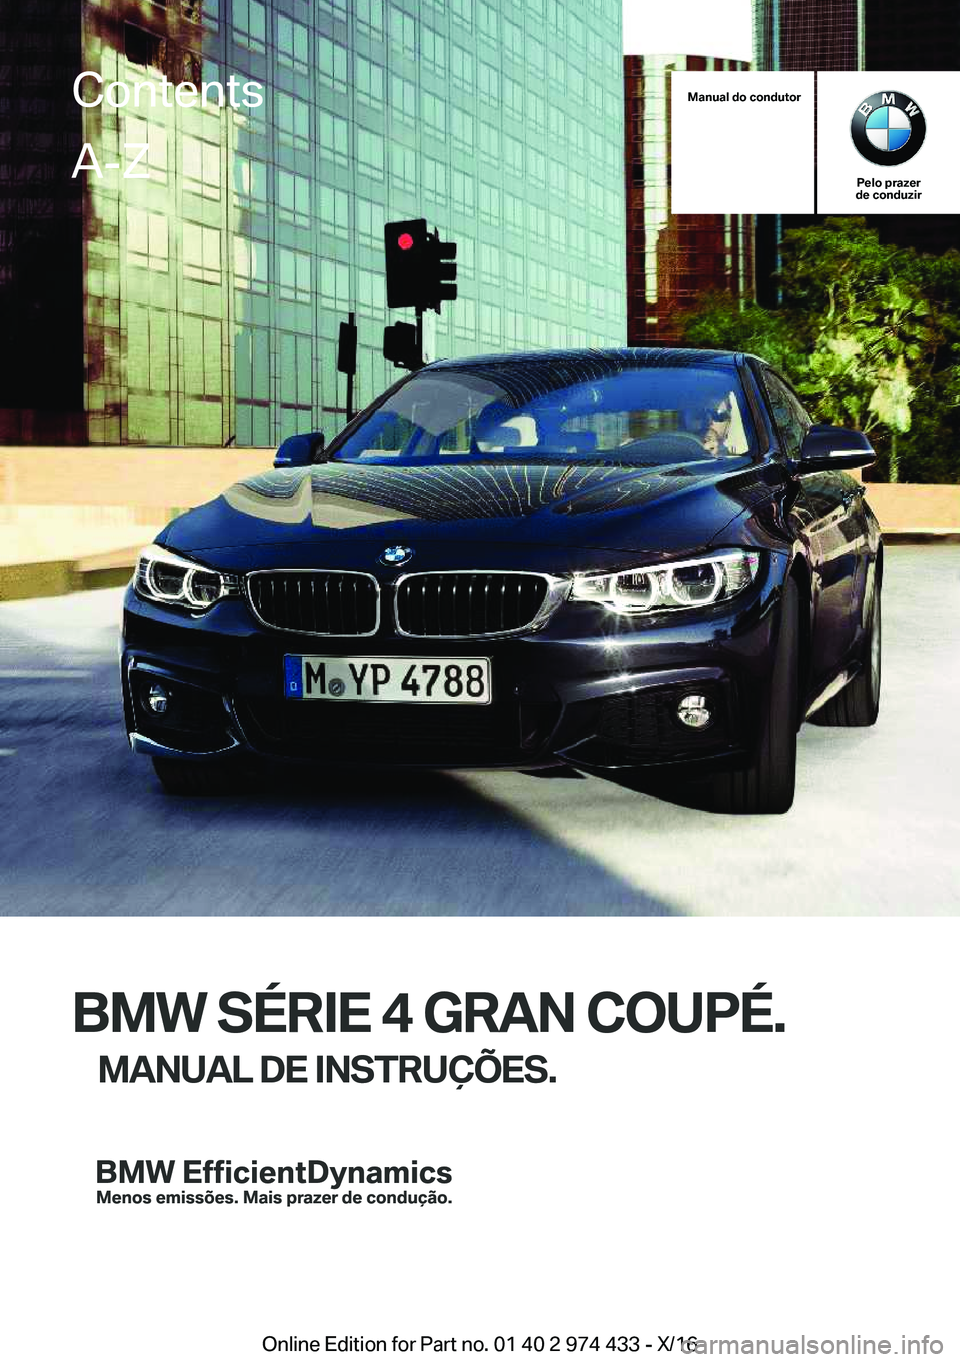 BMW 4 SERIES GRAN COUPE 2017  Manual do condutor (in Portuguese) �M�a�n�u�a�l��d�o��c�o�n�d�u�t�o�r
�P�e�l�o��p�r�a�z�e�r
�d�e��c�o�n�d�u�z�i�r
�B�M�W��S�